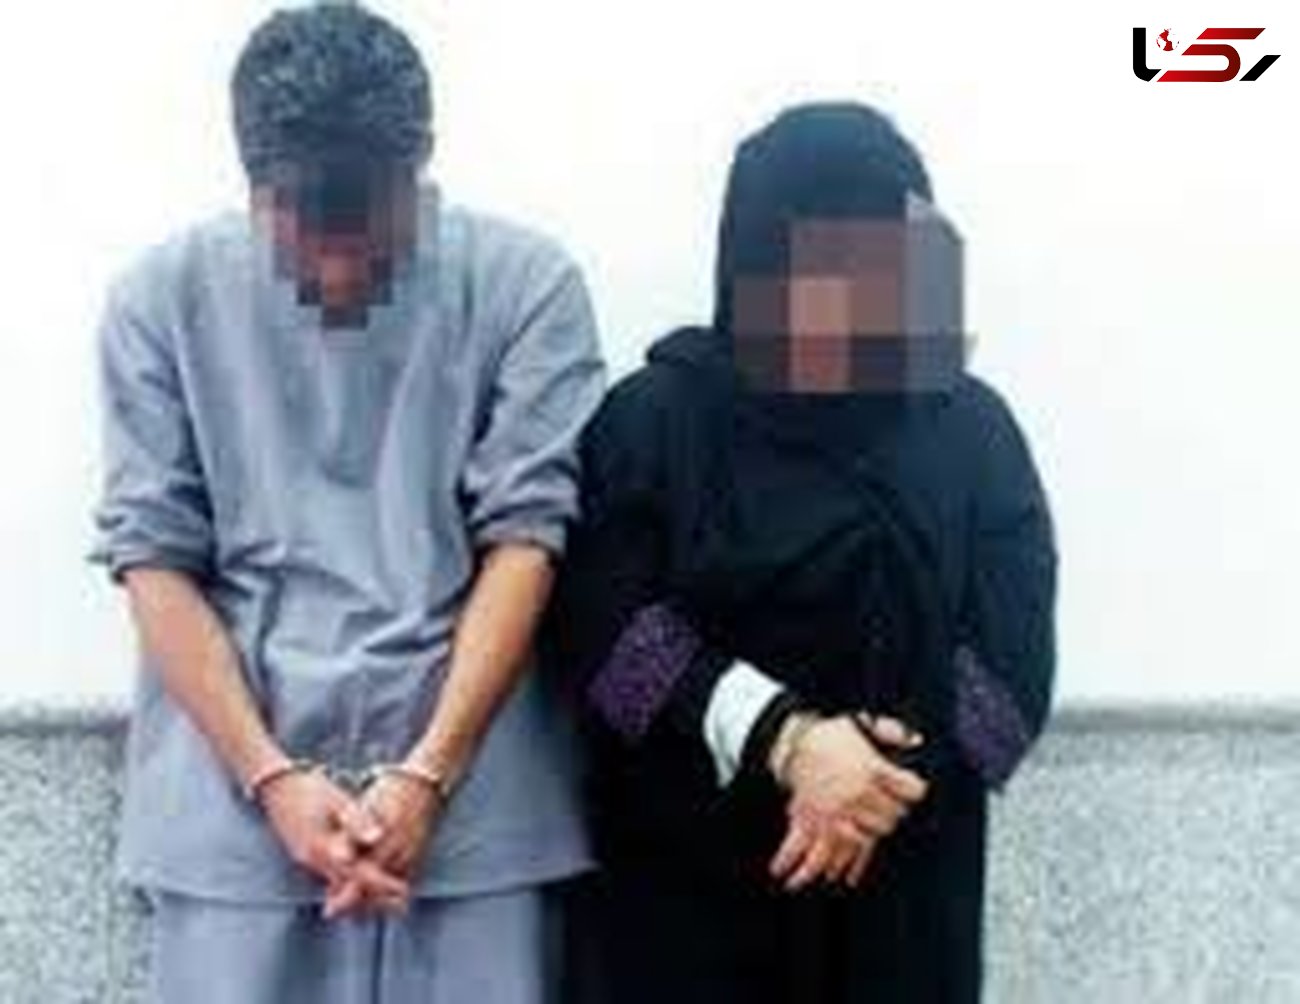 این زن و شوهر در 5 استان تحت تعقیب بودند / بازداشت در لارستان

